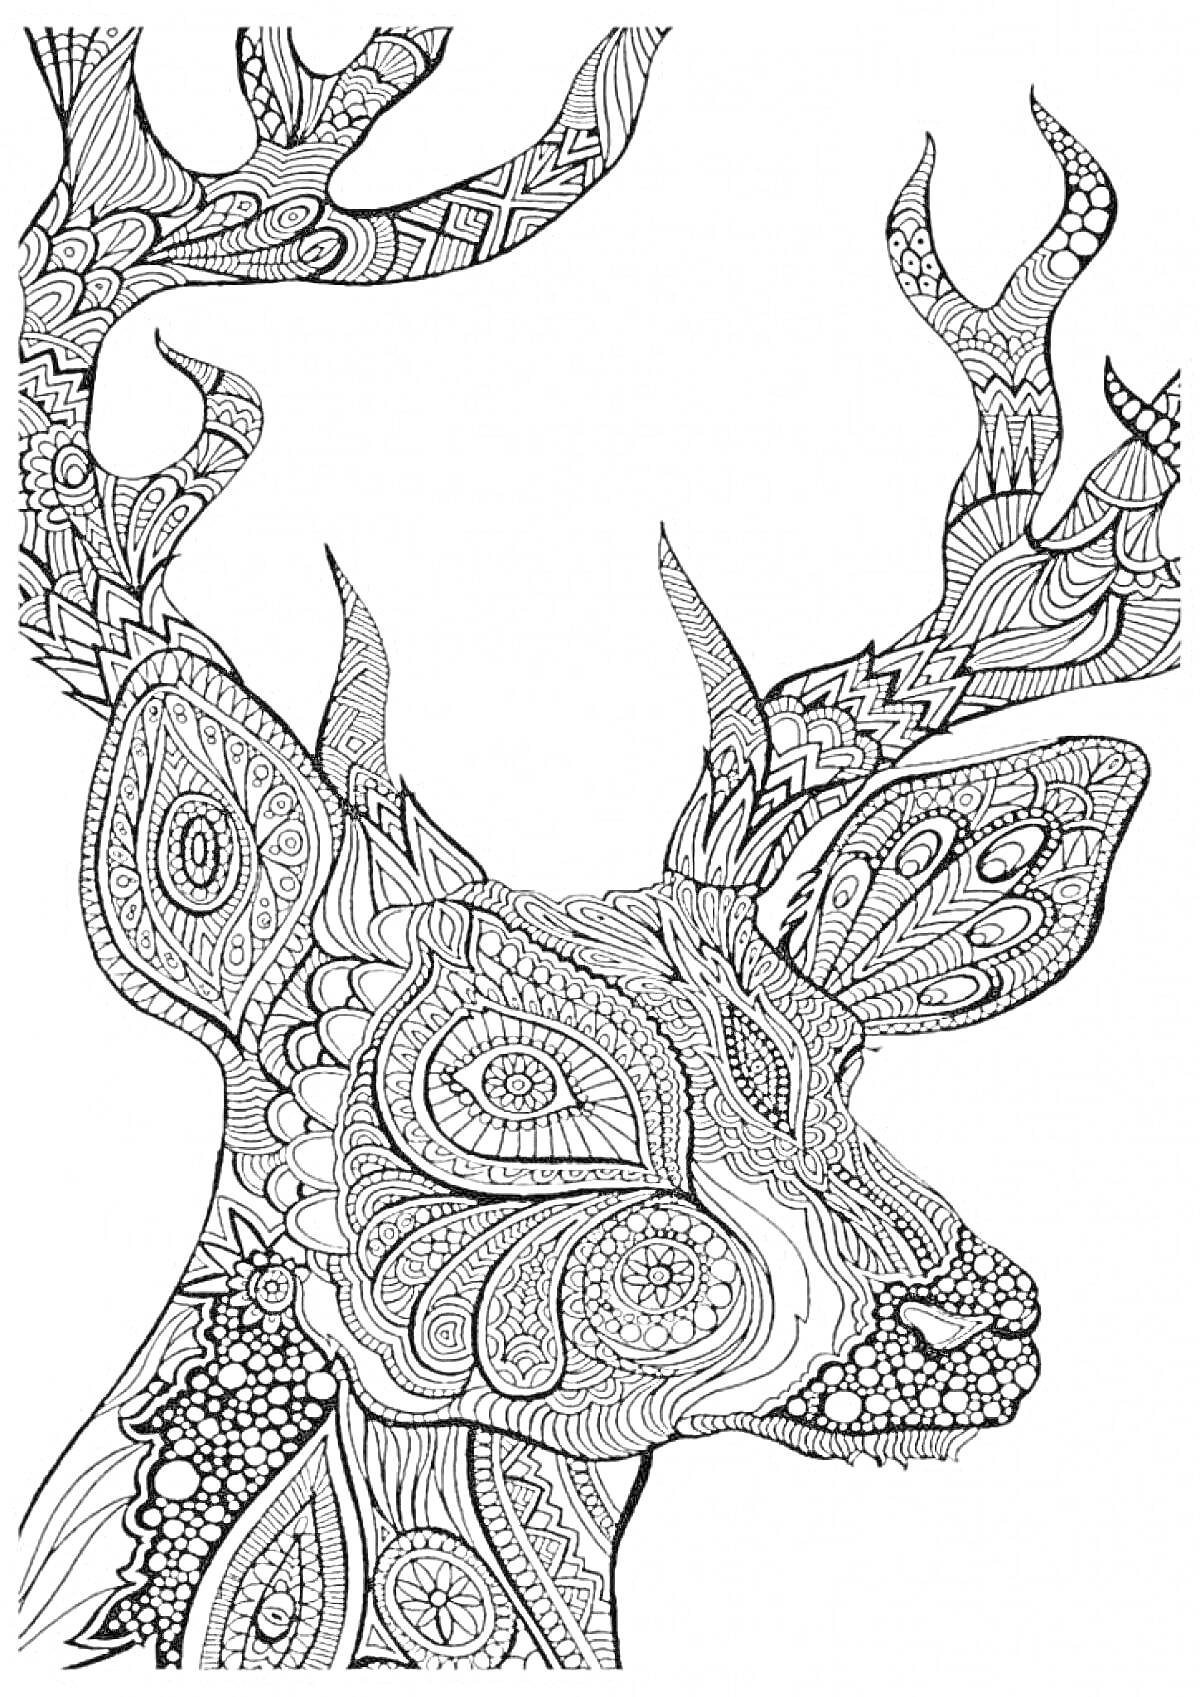 Рисунок головы оленя с детализированными узорами на рогах и теле